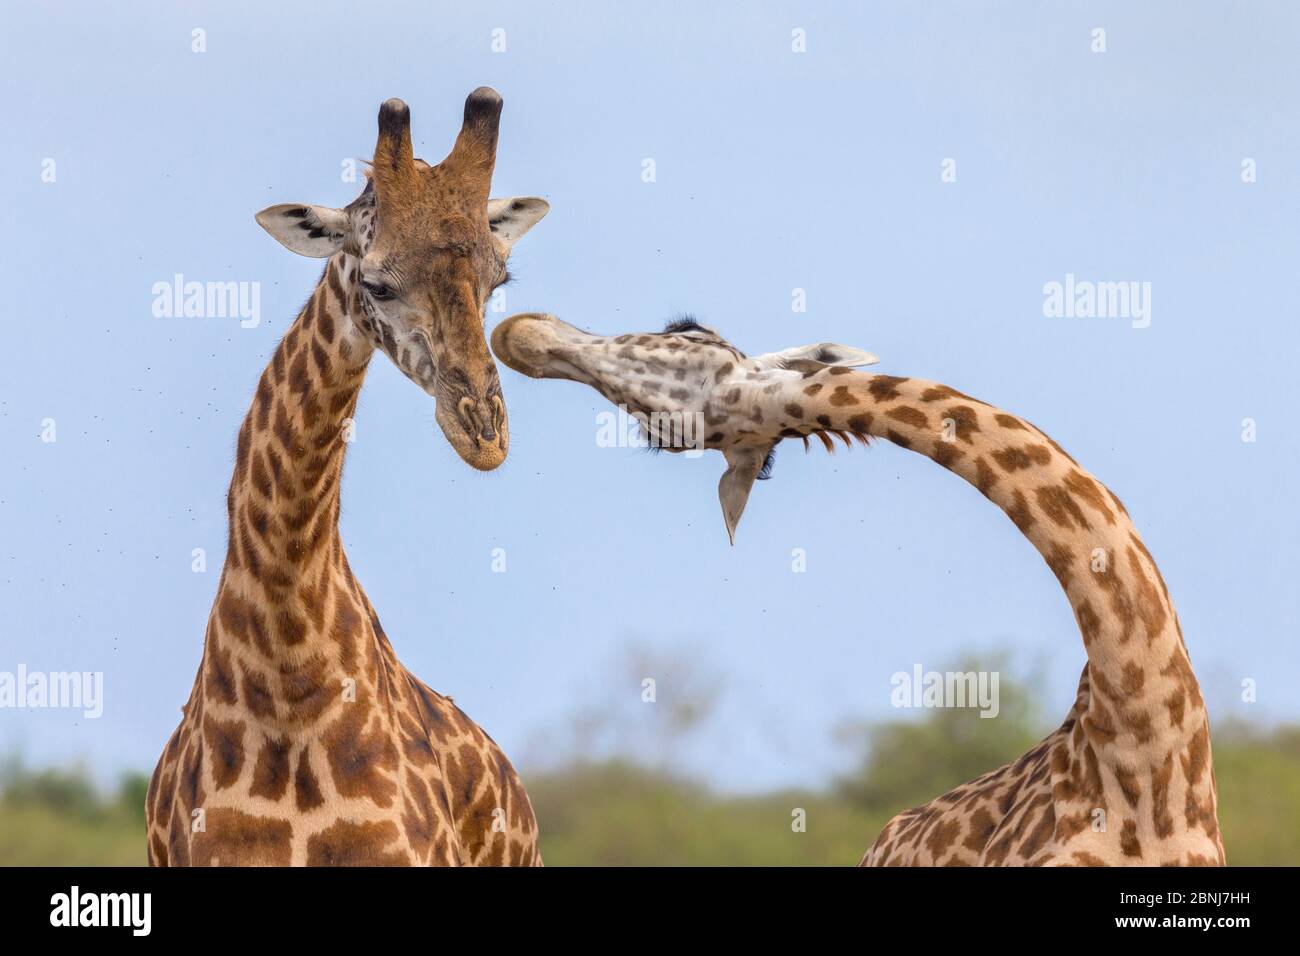 Masai giraffe (Giraffa camelopardalis tippelskirchi) uomini di lotta, Masai Mara National Reserve, Kenya. Sequenza 1 di 3 Foto Stock